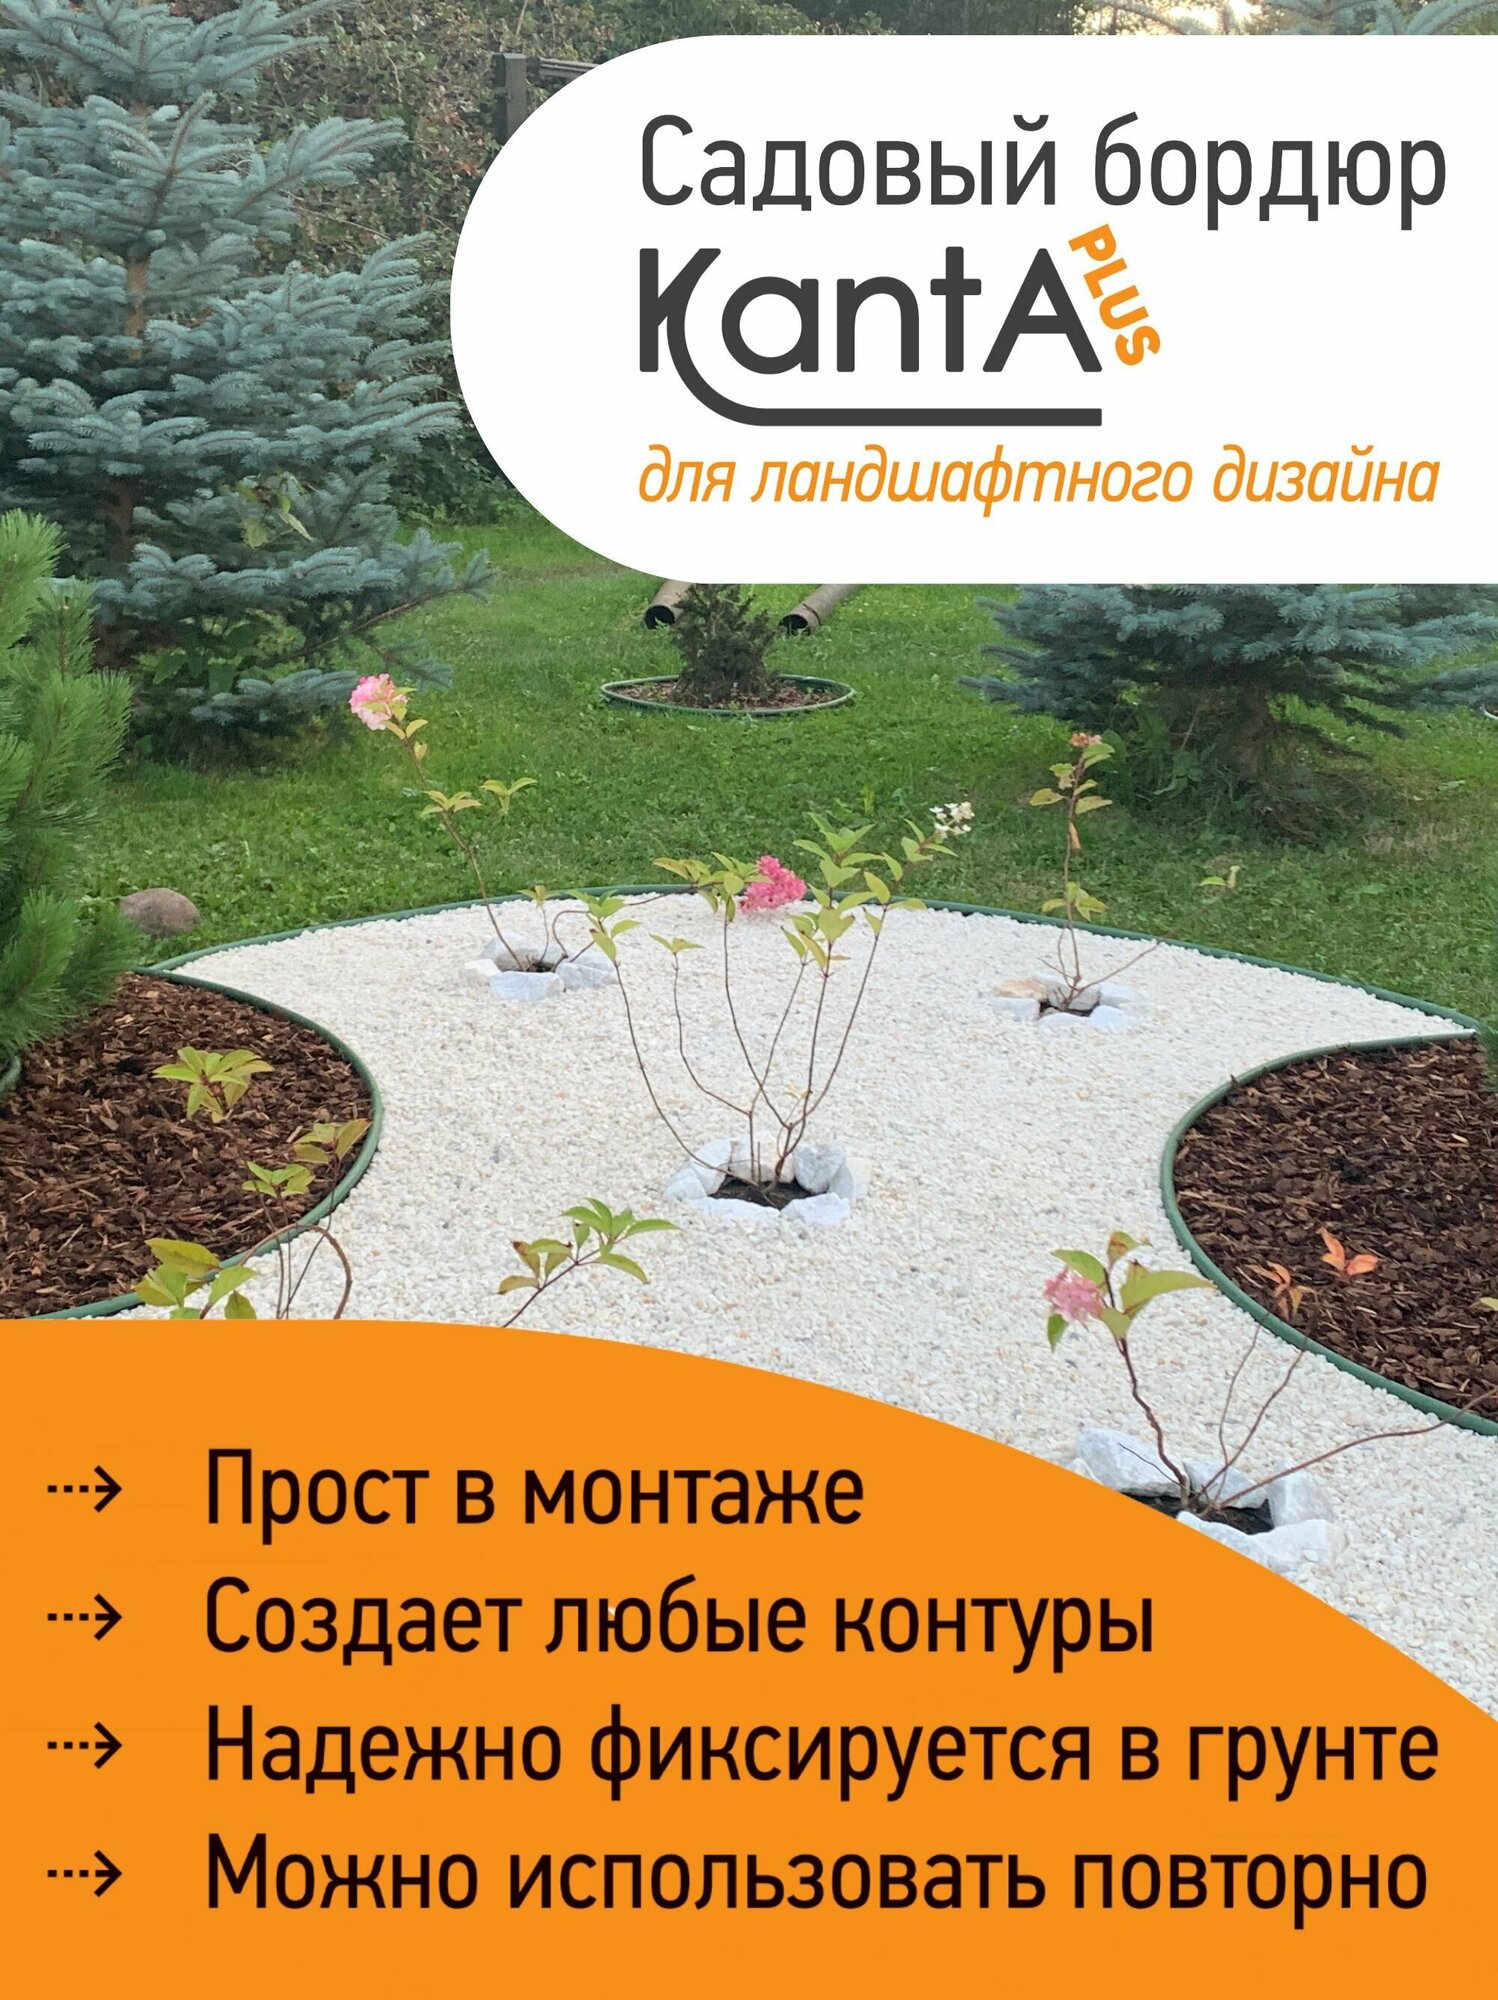 Бордюр садовый Стандартпарк Канта Плюс (Standartpark KANTA Plus), оливковый, длина 10 м, высота 11 см, диаметр трубки 2.1 см - фотография № 6